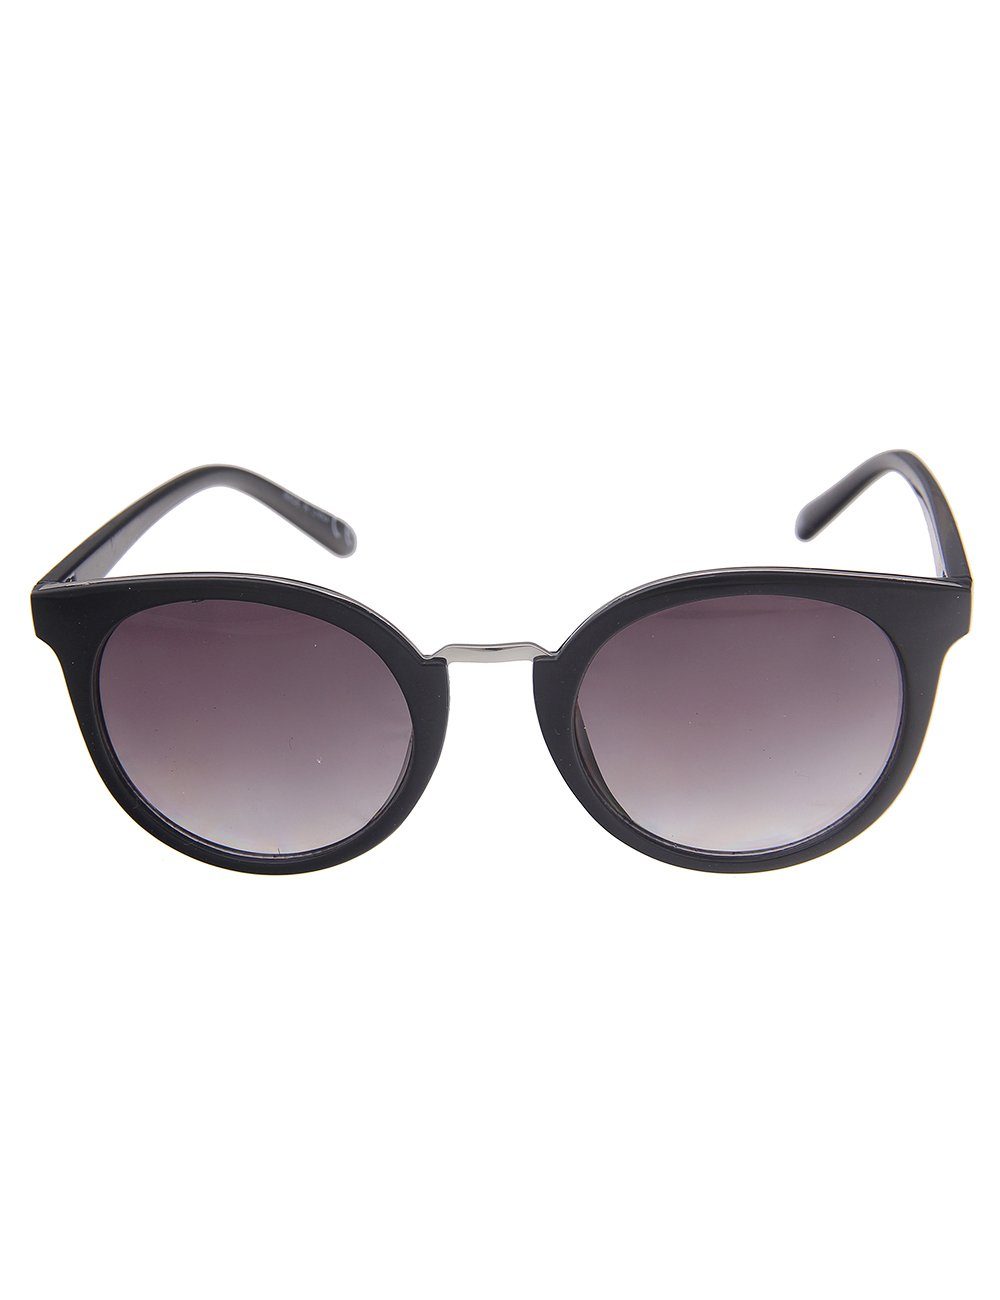 leslii Sonnenbrille Classic mit silberfarbenem Nasensteg